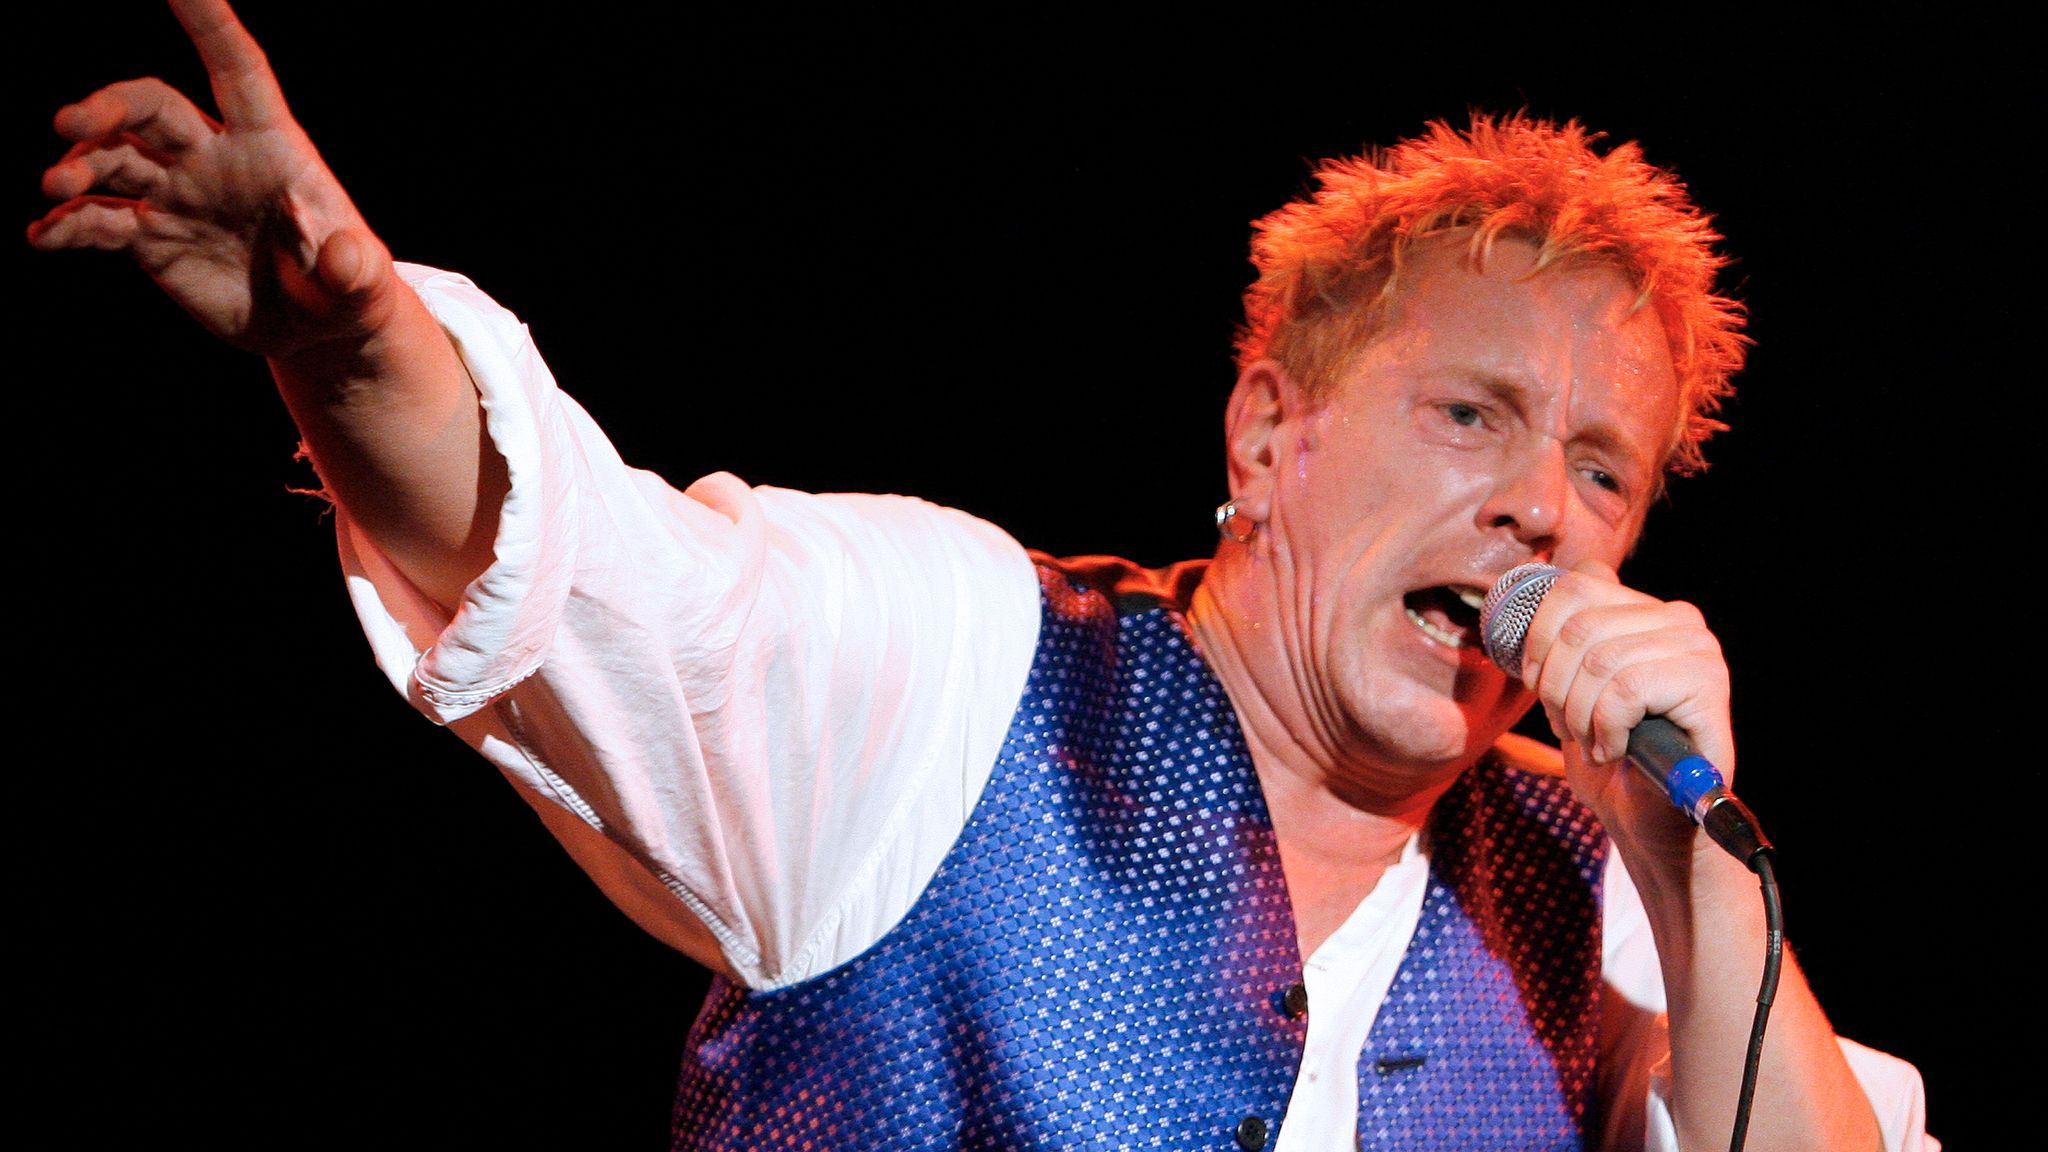 hennemusic: Sex Pistols members win legal battle against Johnny